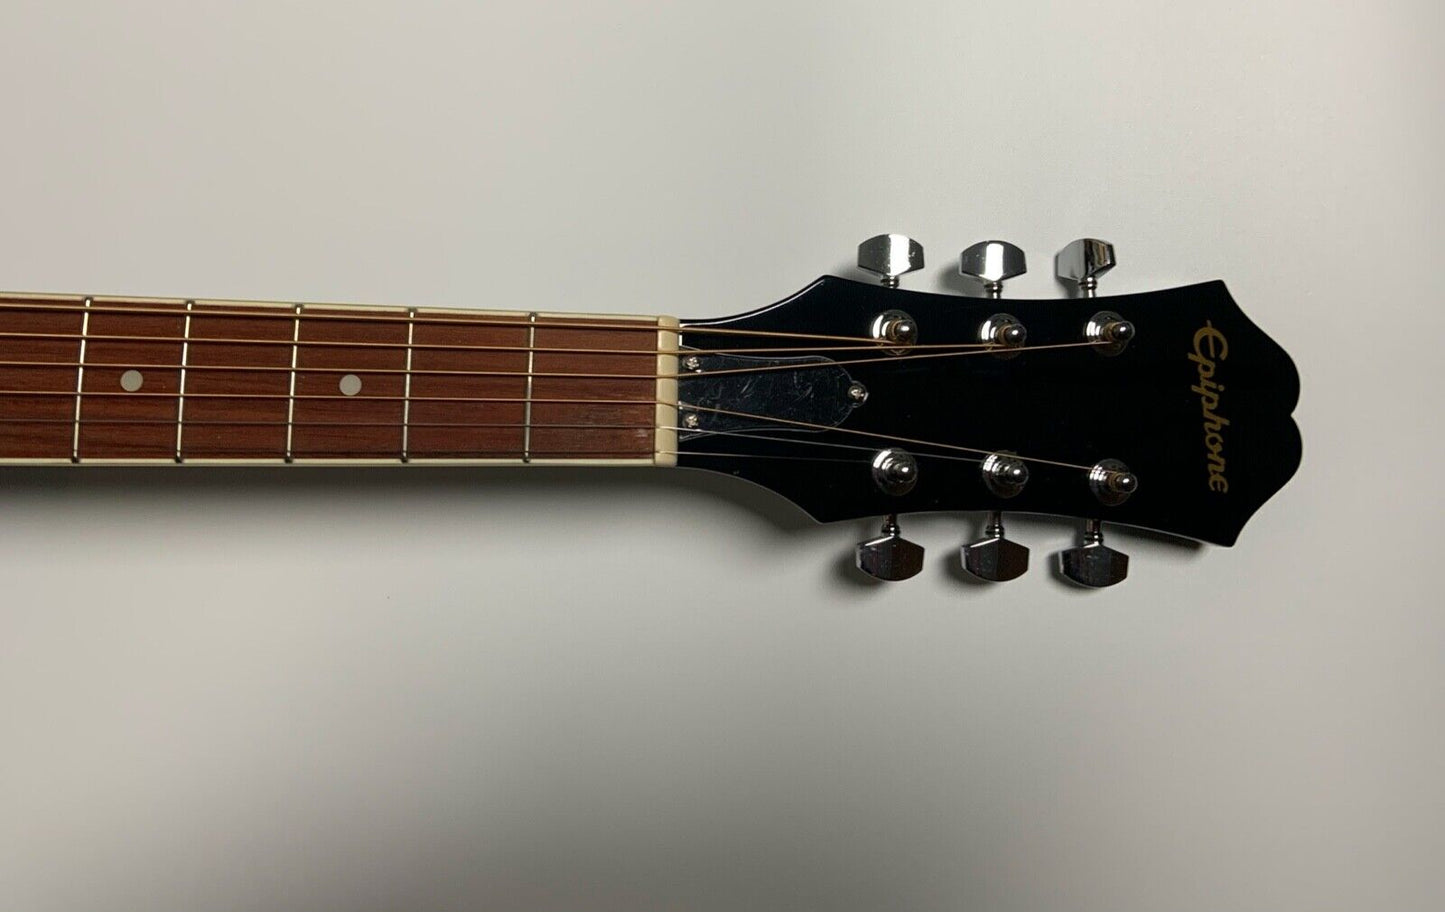 Lyle Lovett Autograph Signed Acoustic Epiphone Guitar JSA